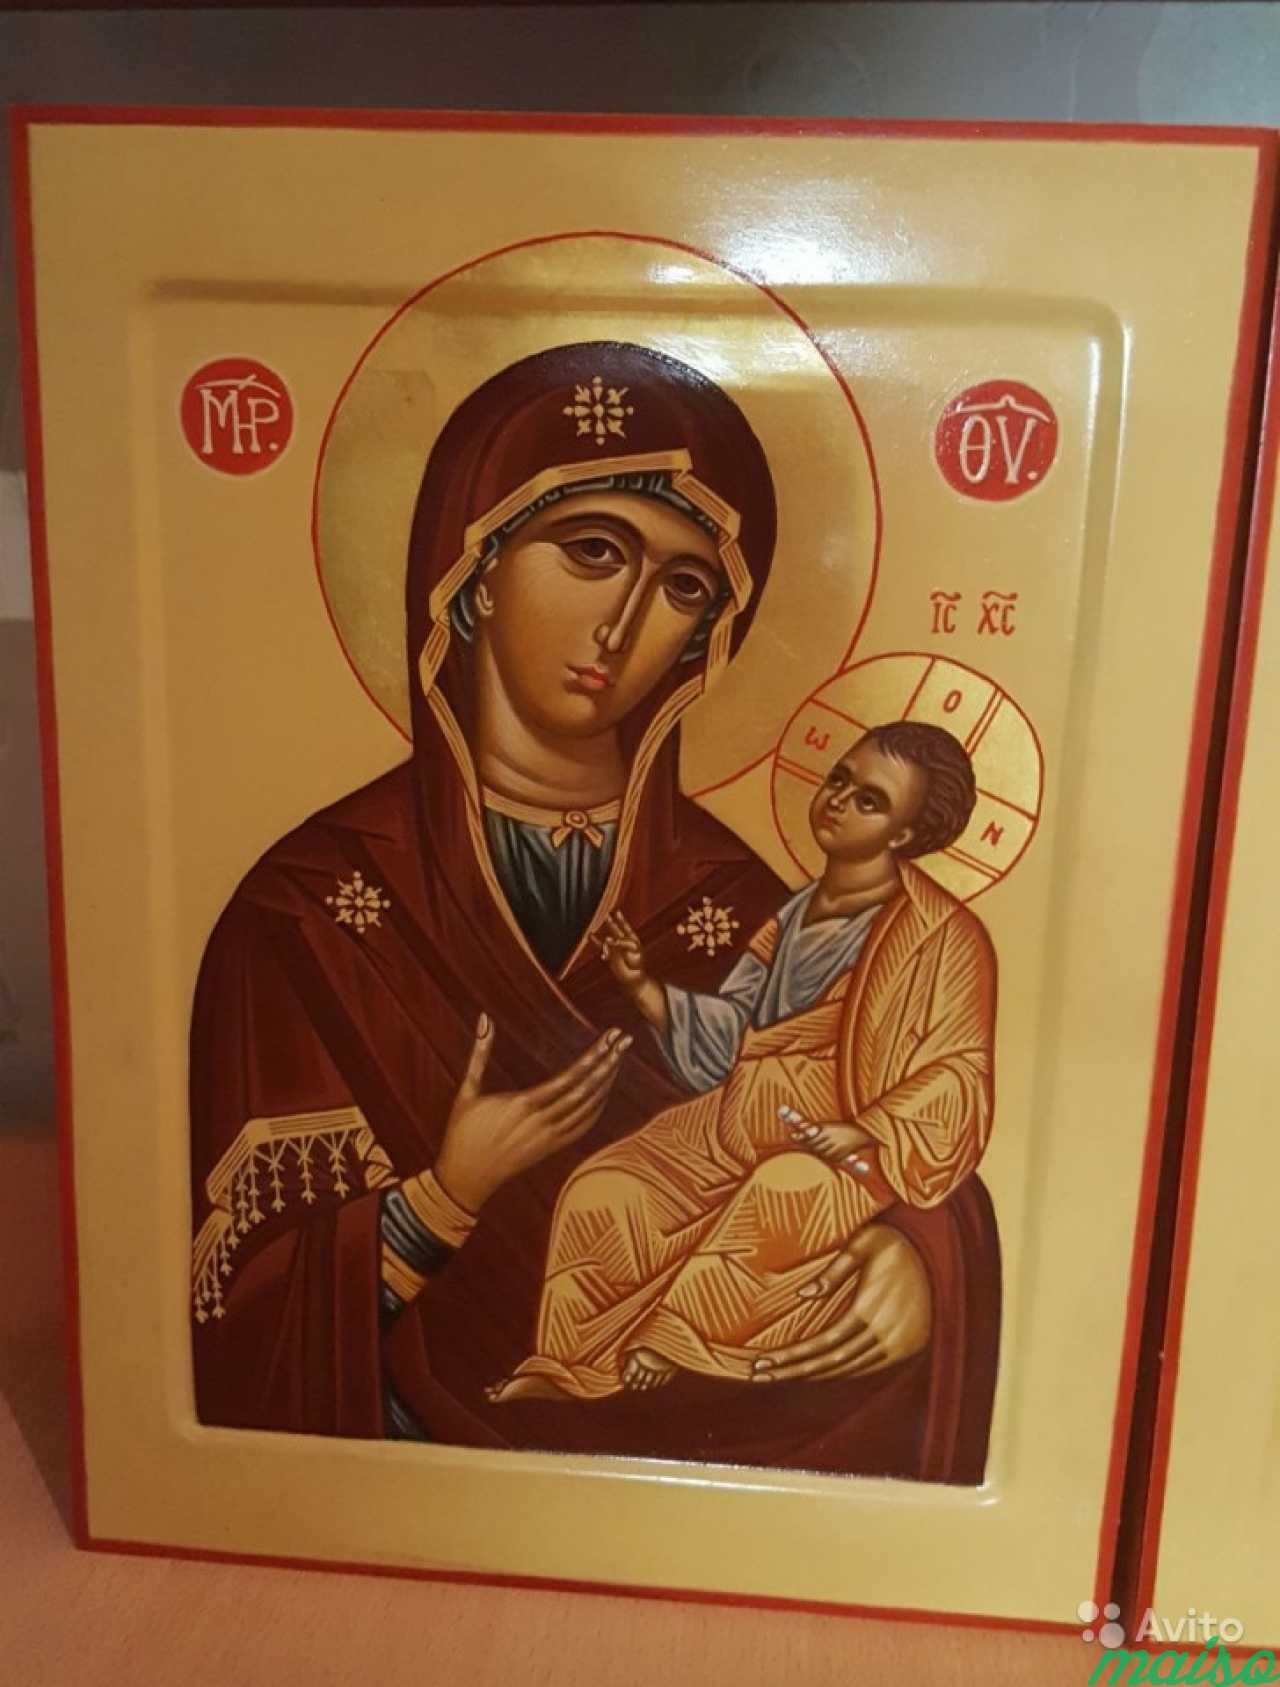 Рукописная Икона на заказ, и продажа готовых икон в Санкт-Петербурге. Фото 7